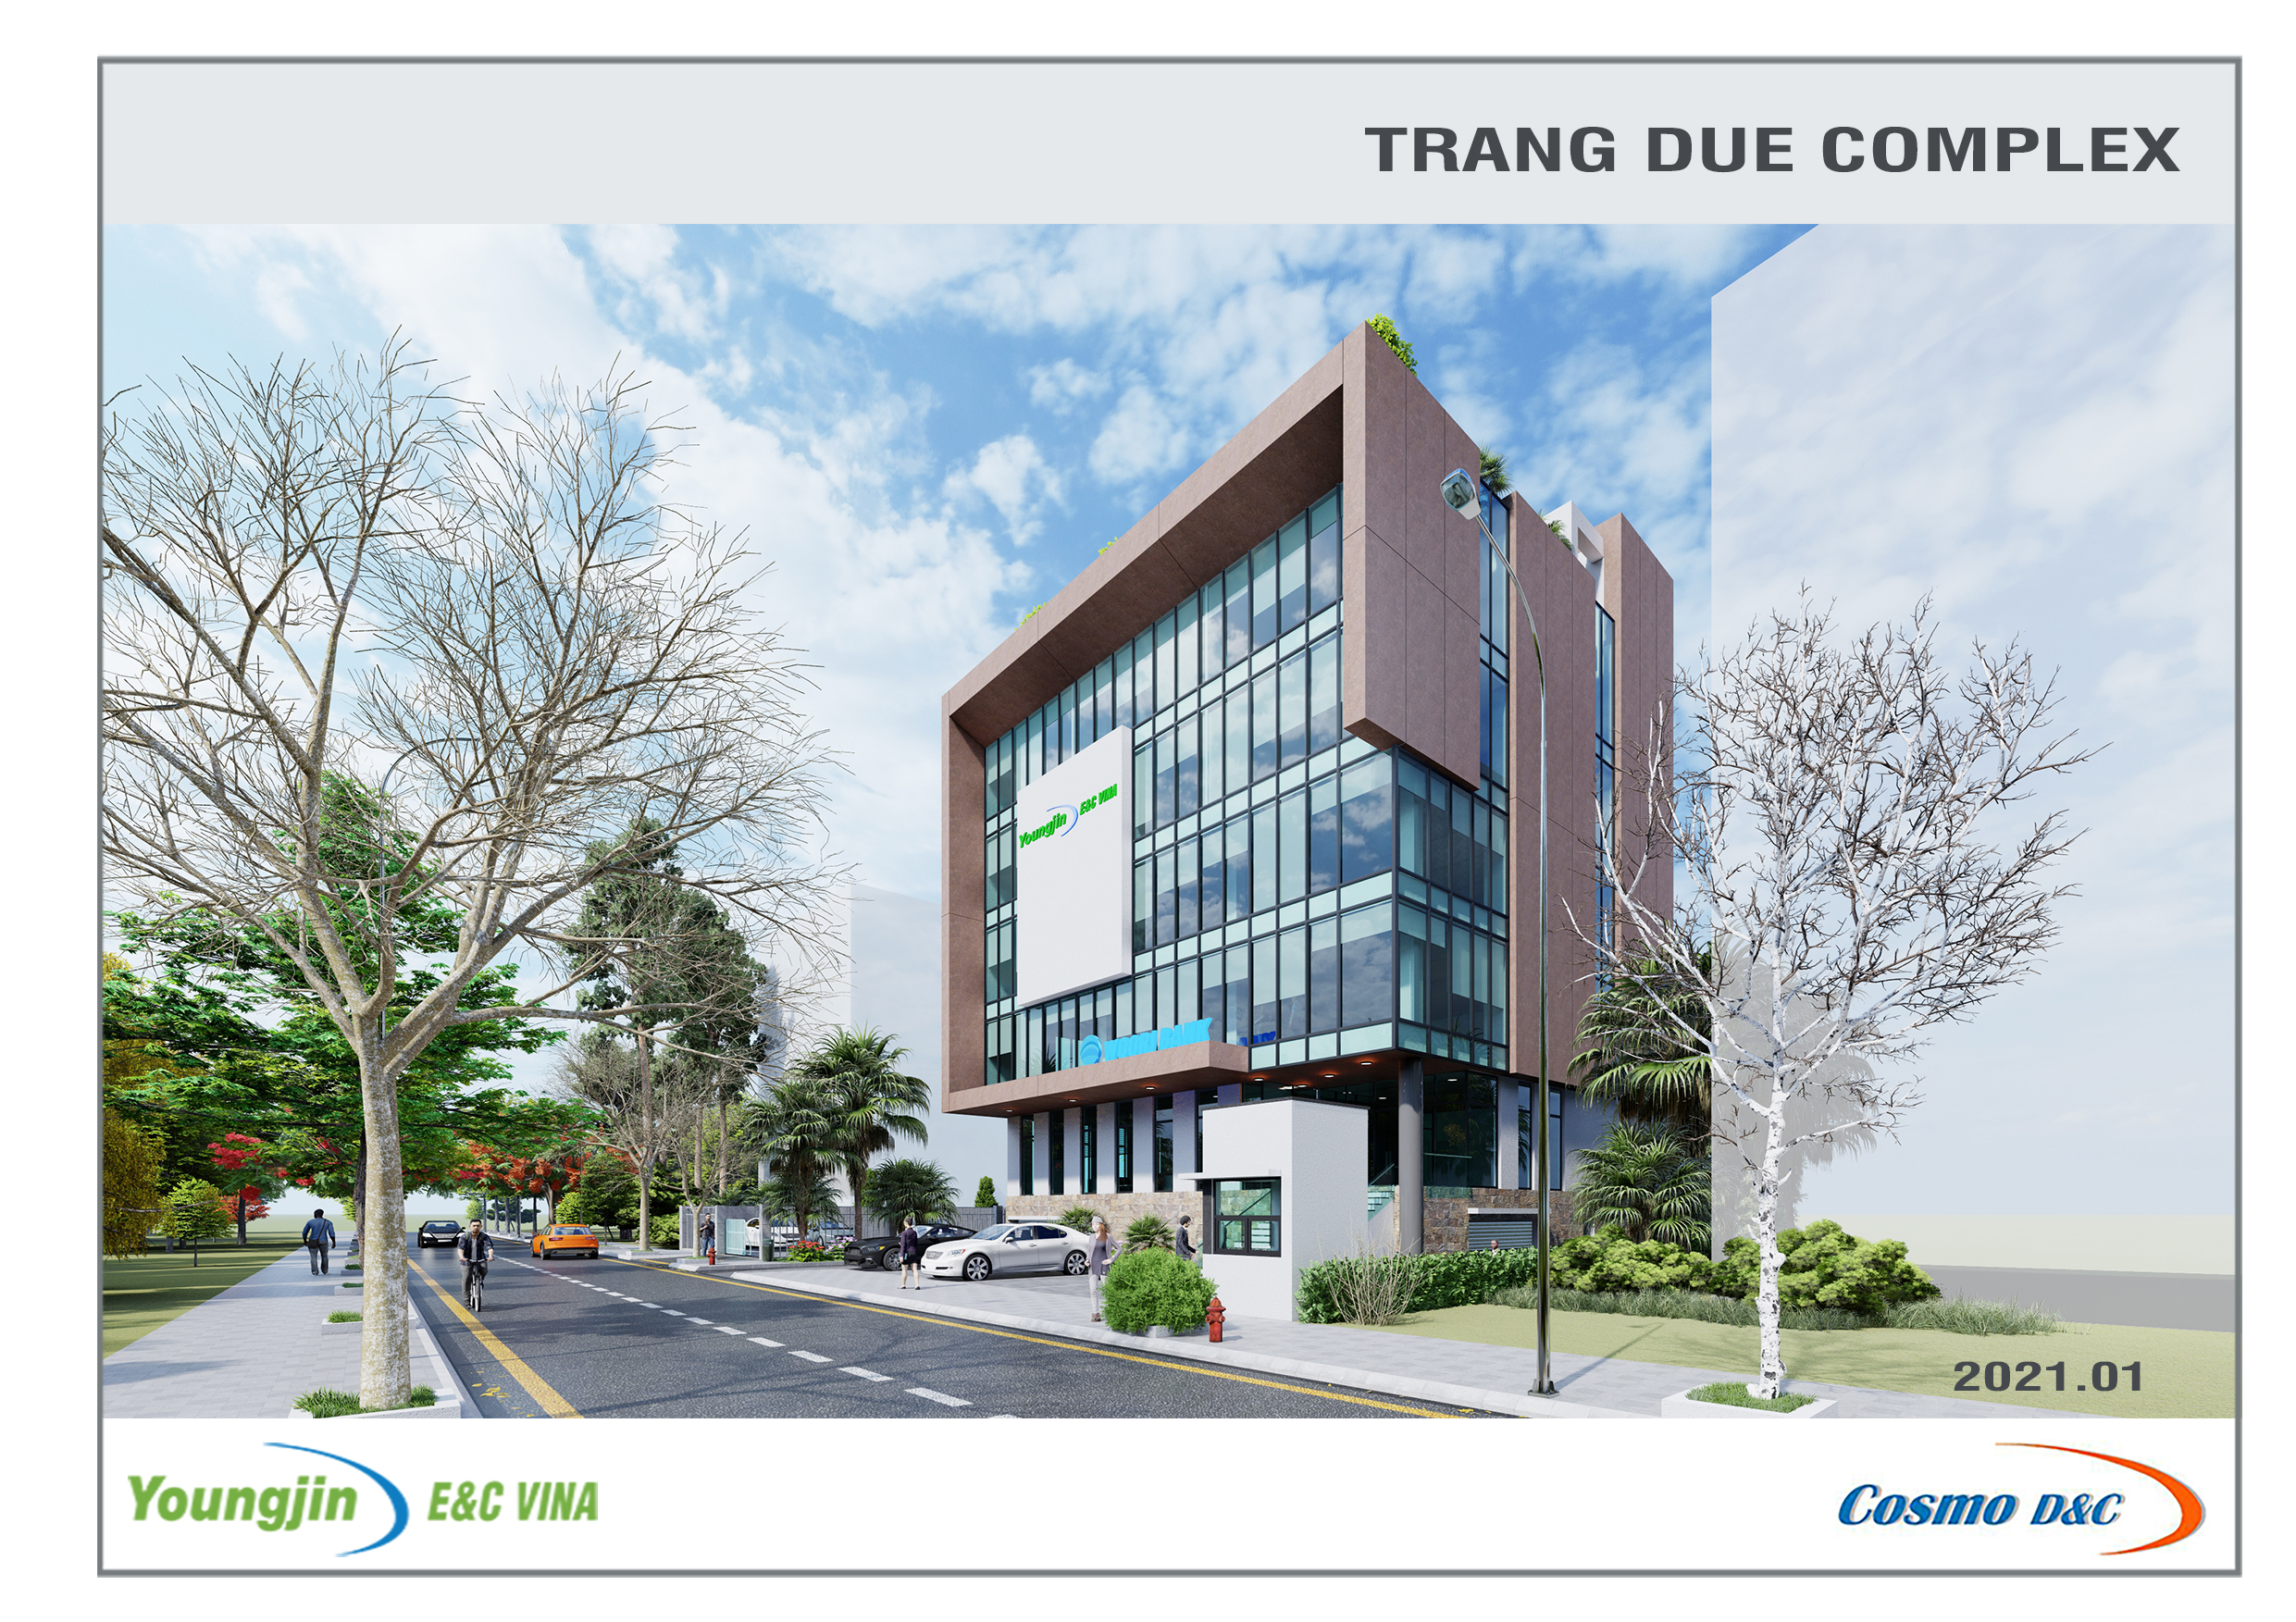 Youngjin E&C Vina Trang Due Complex Building